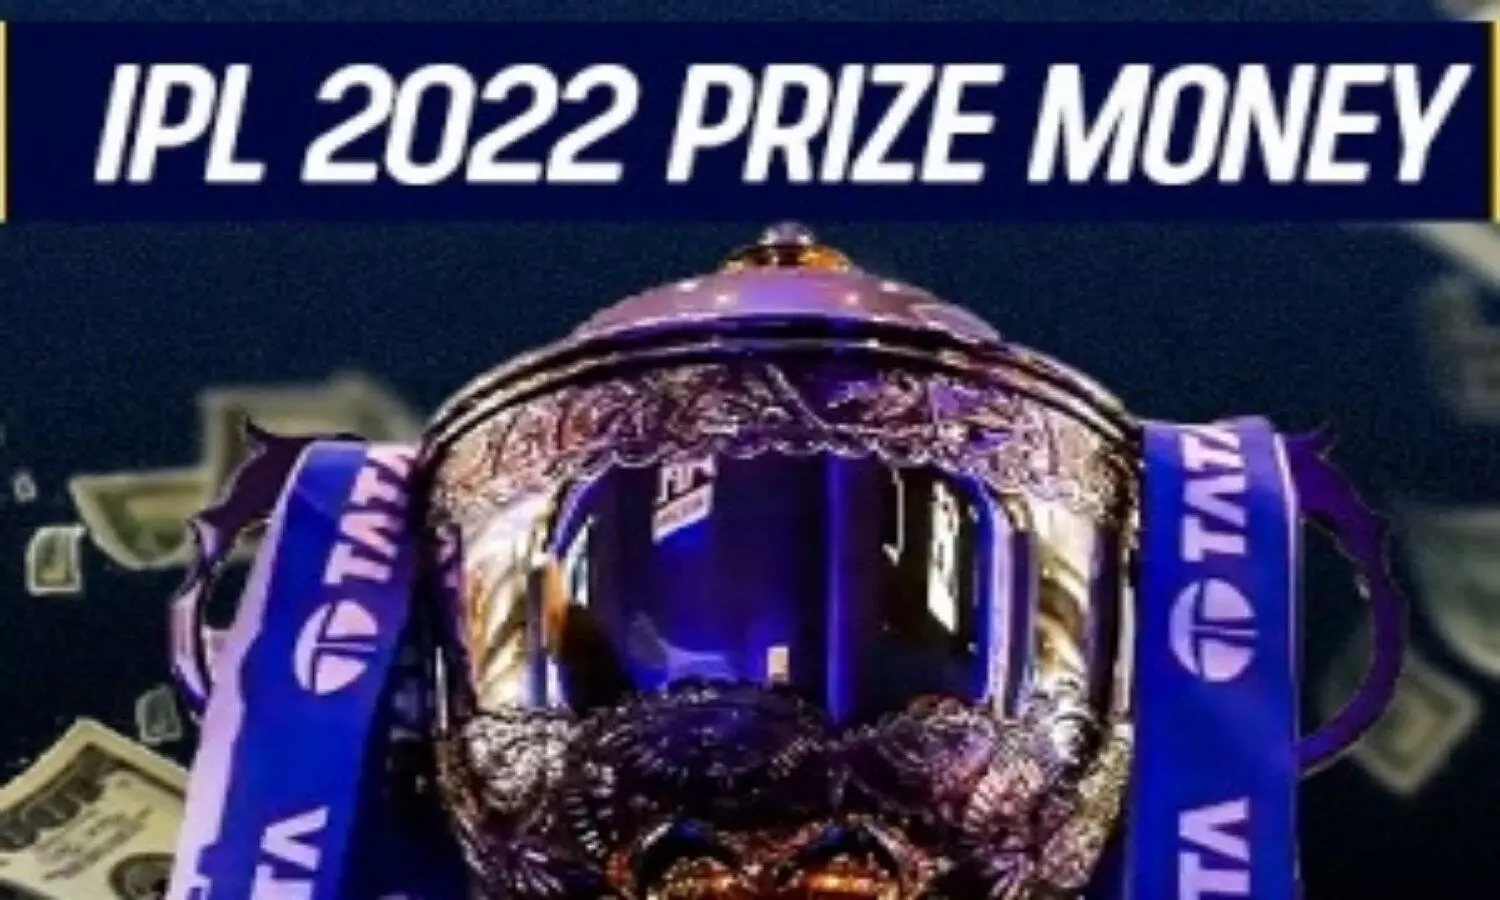 IPL Prize Money 2022